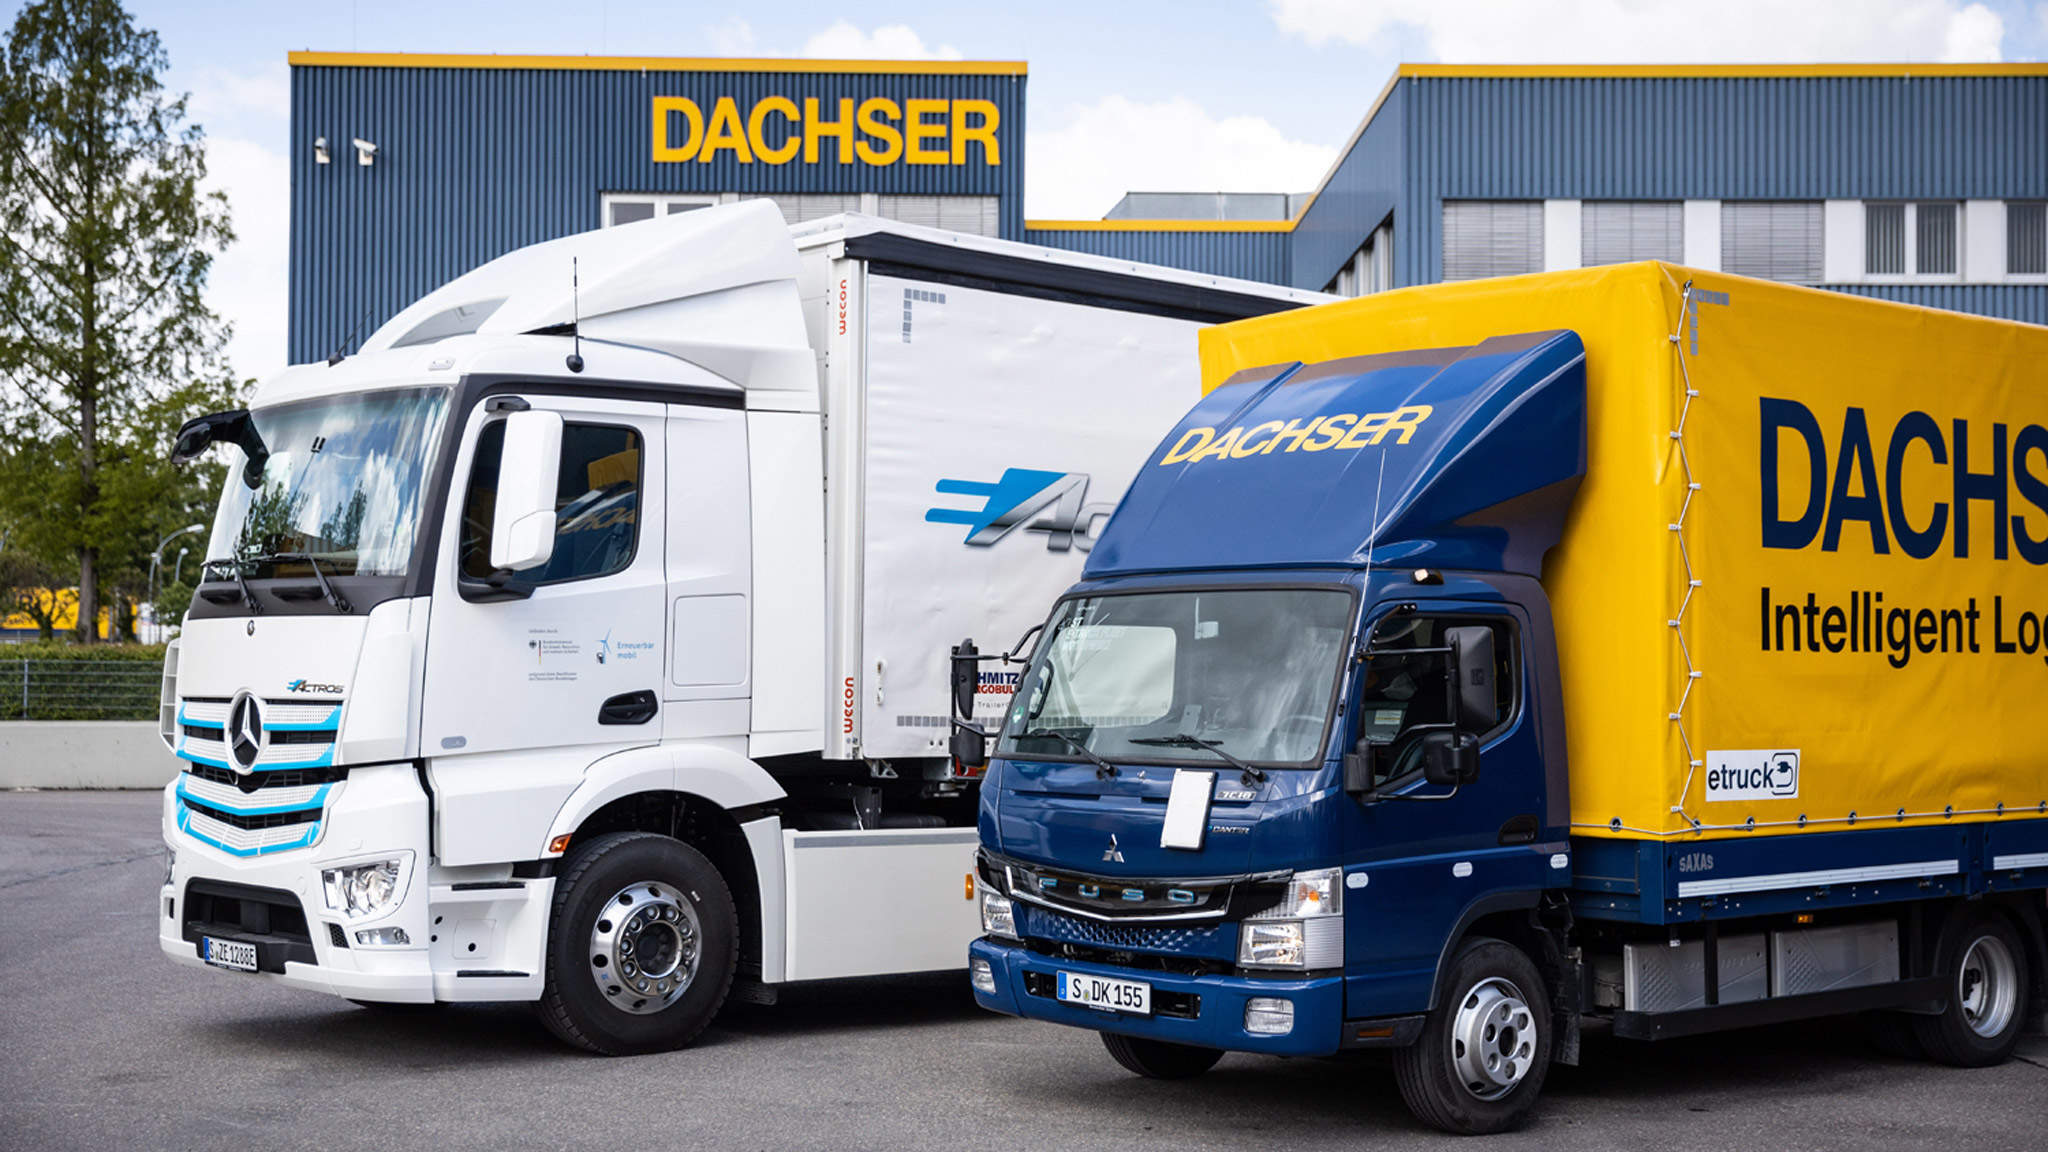 
Caminhões totalmente elétricos que permitem a entrega livre de emissões da DACHSER em Stuttgart: Mercedes-Benz eActros (esquerda) e FUSO eCanter (direita)